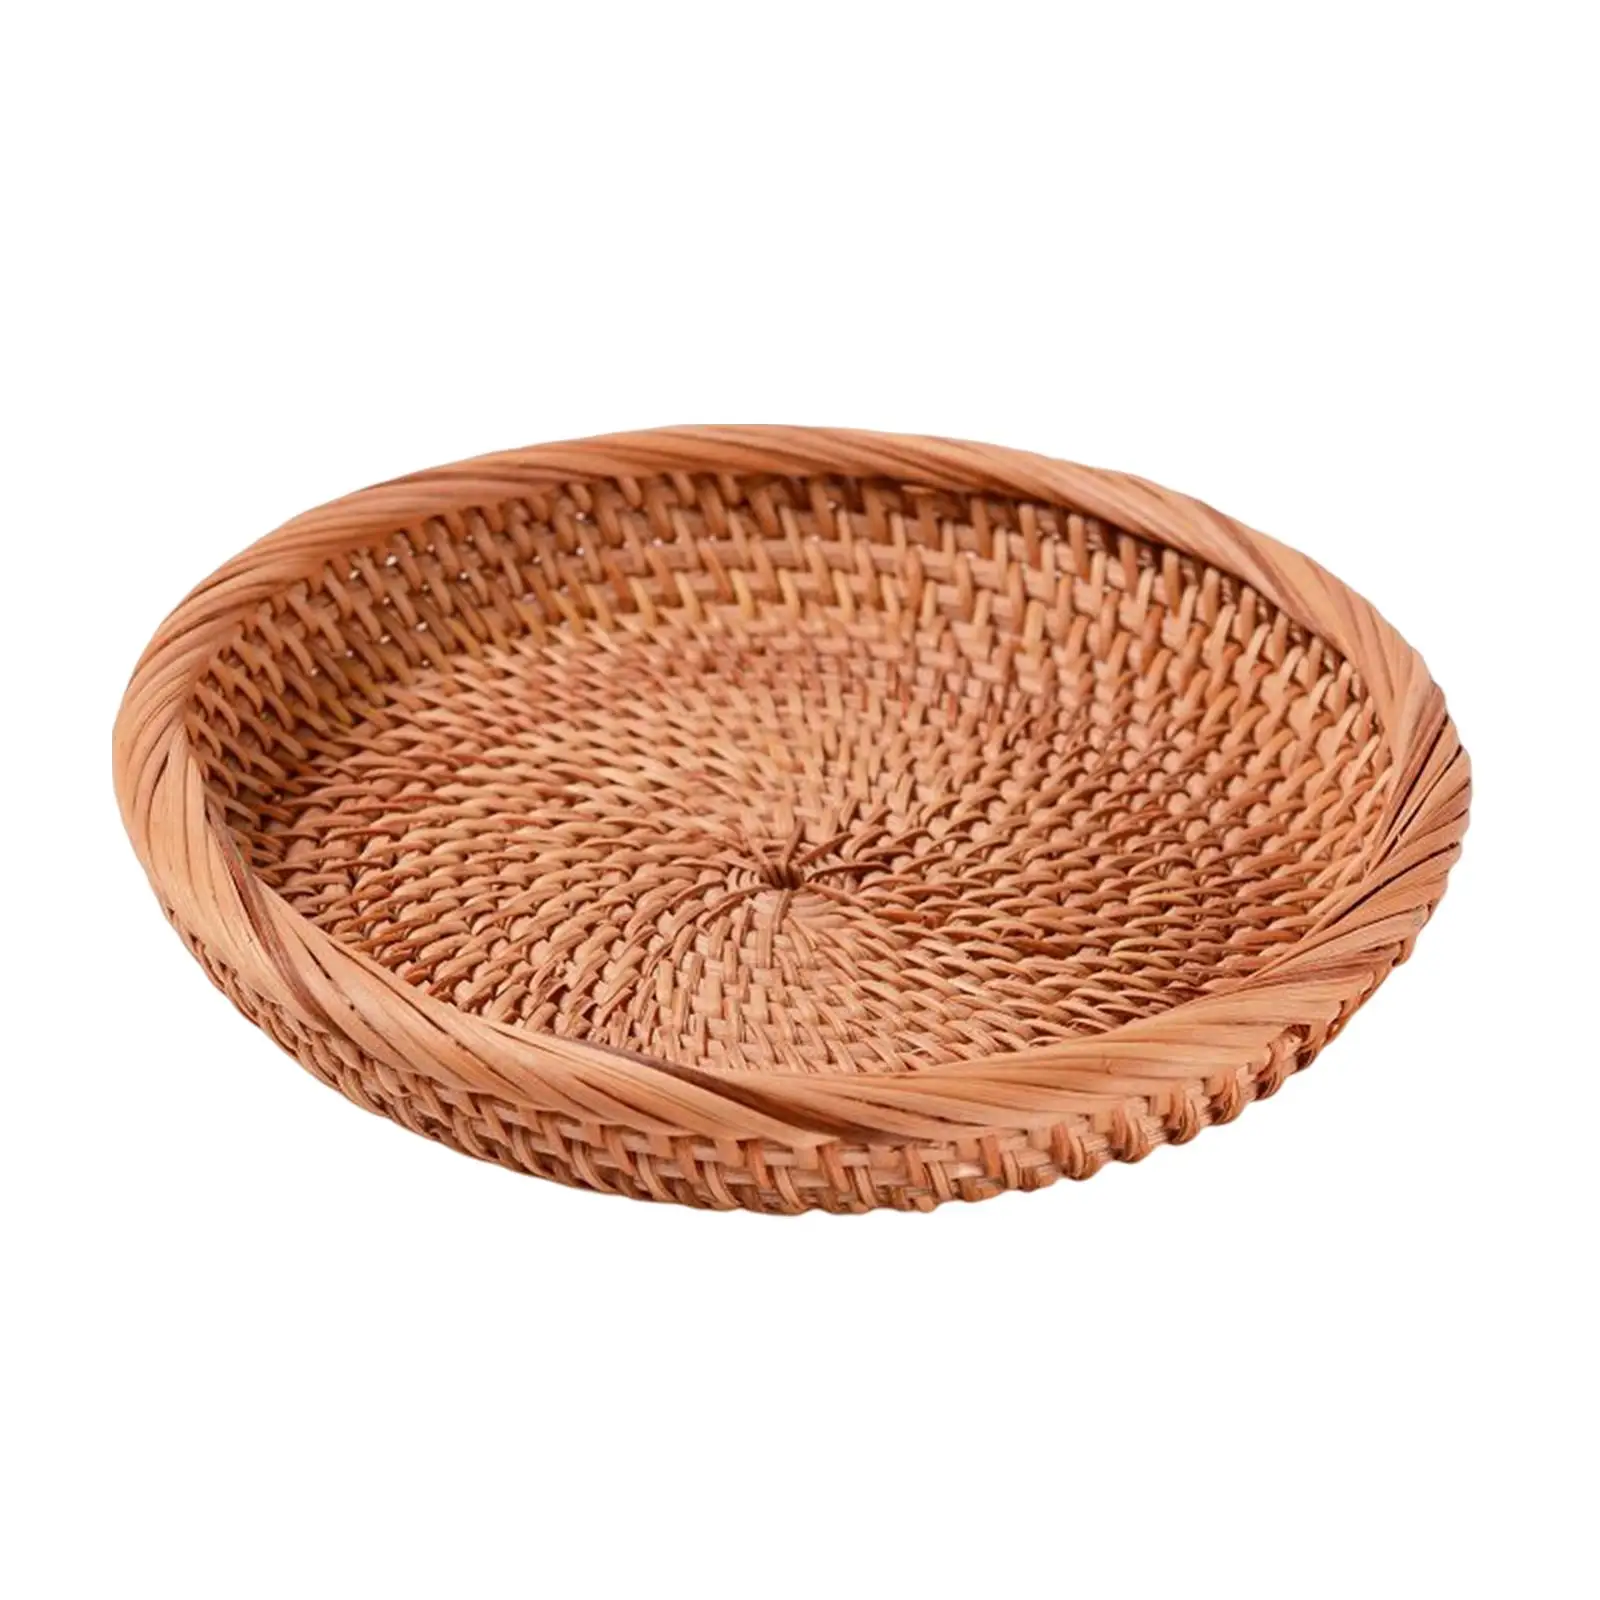 Wicker Tray Tabletop Decorative Food Serving Basket Handwove Wicker Bread Basket Wicker Bowl for kitchen Fruit Home Keys